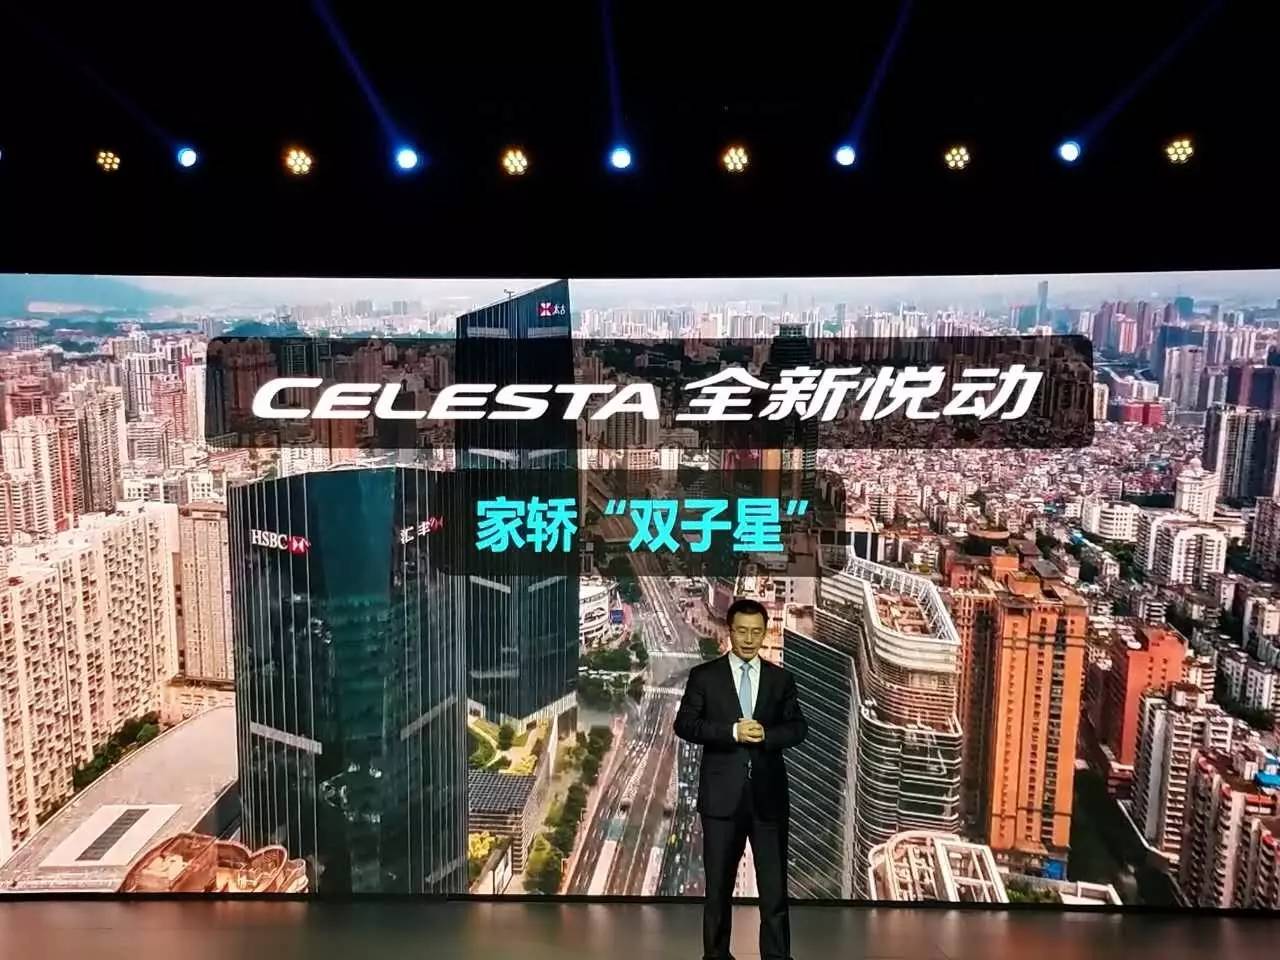 全新悦动发售 北京现代打开文化整合新的征程｜轿车产经